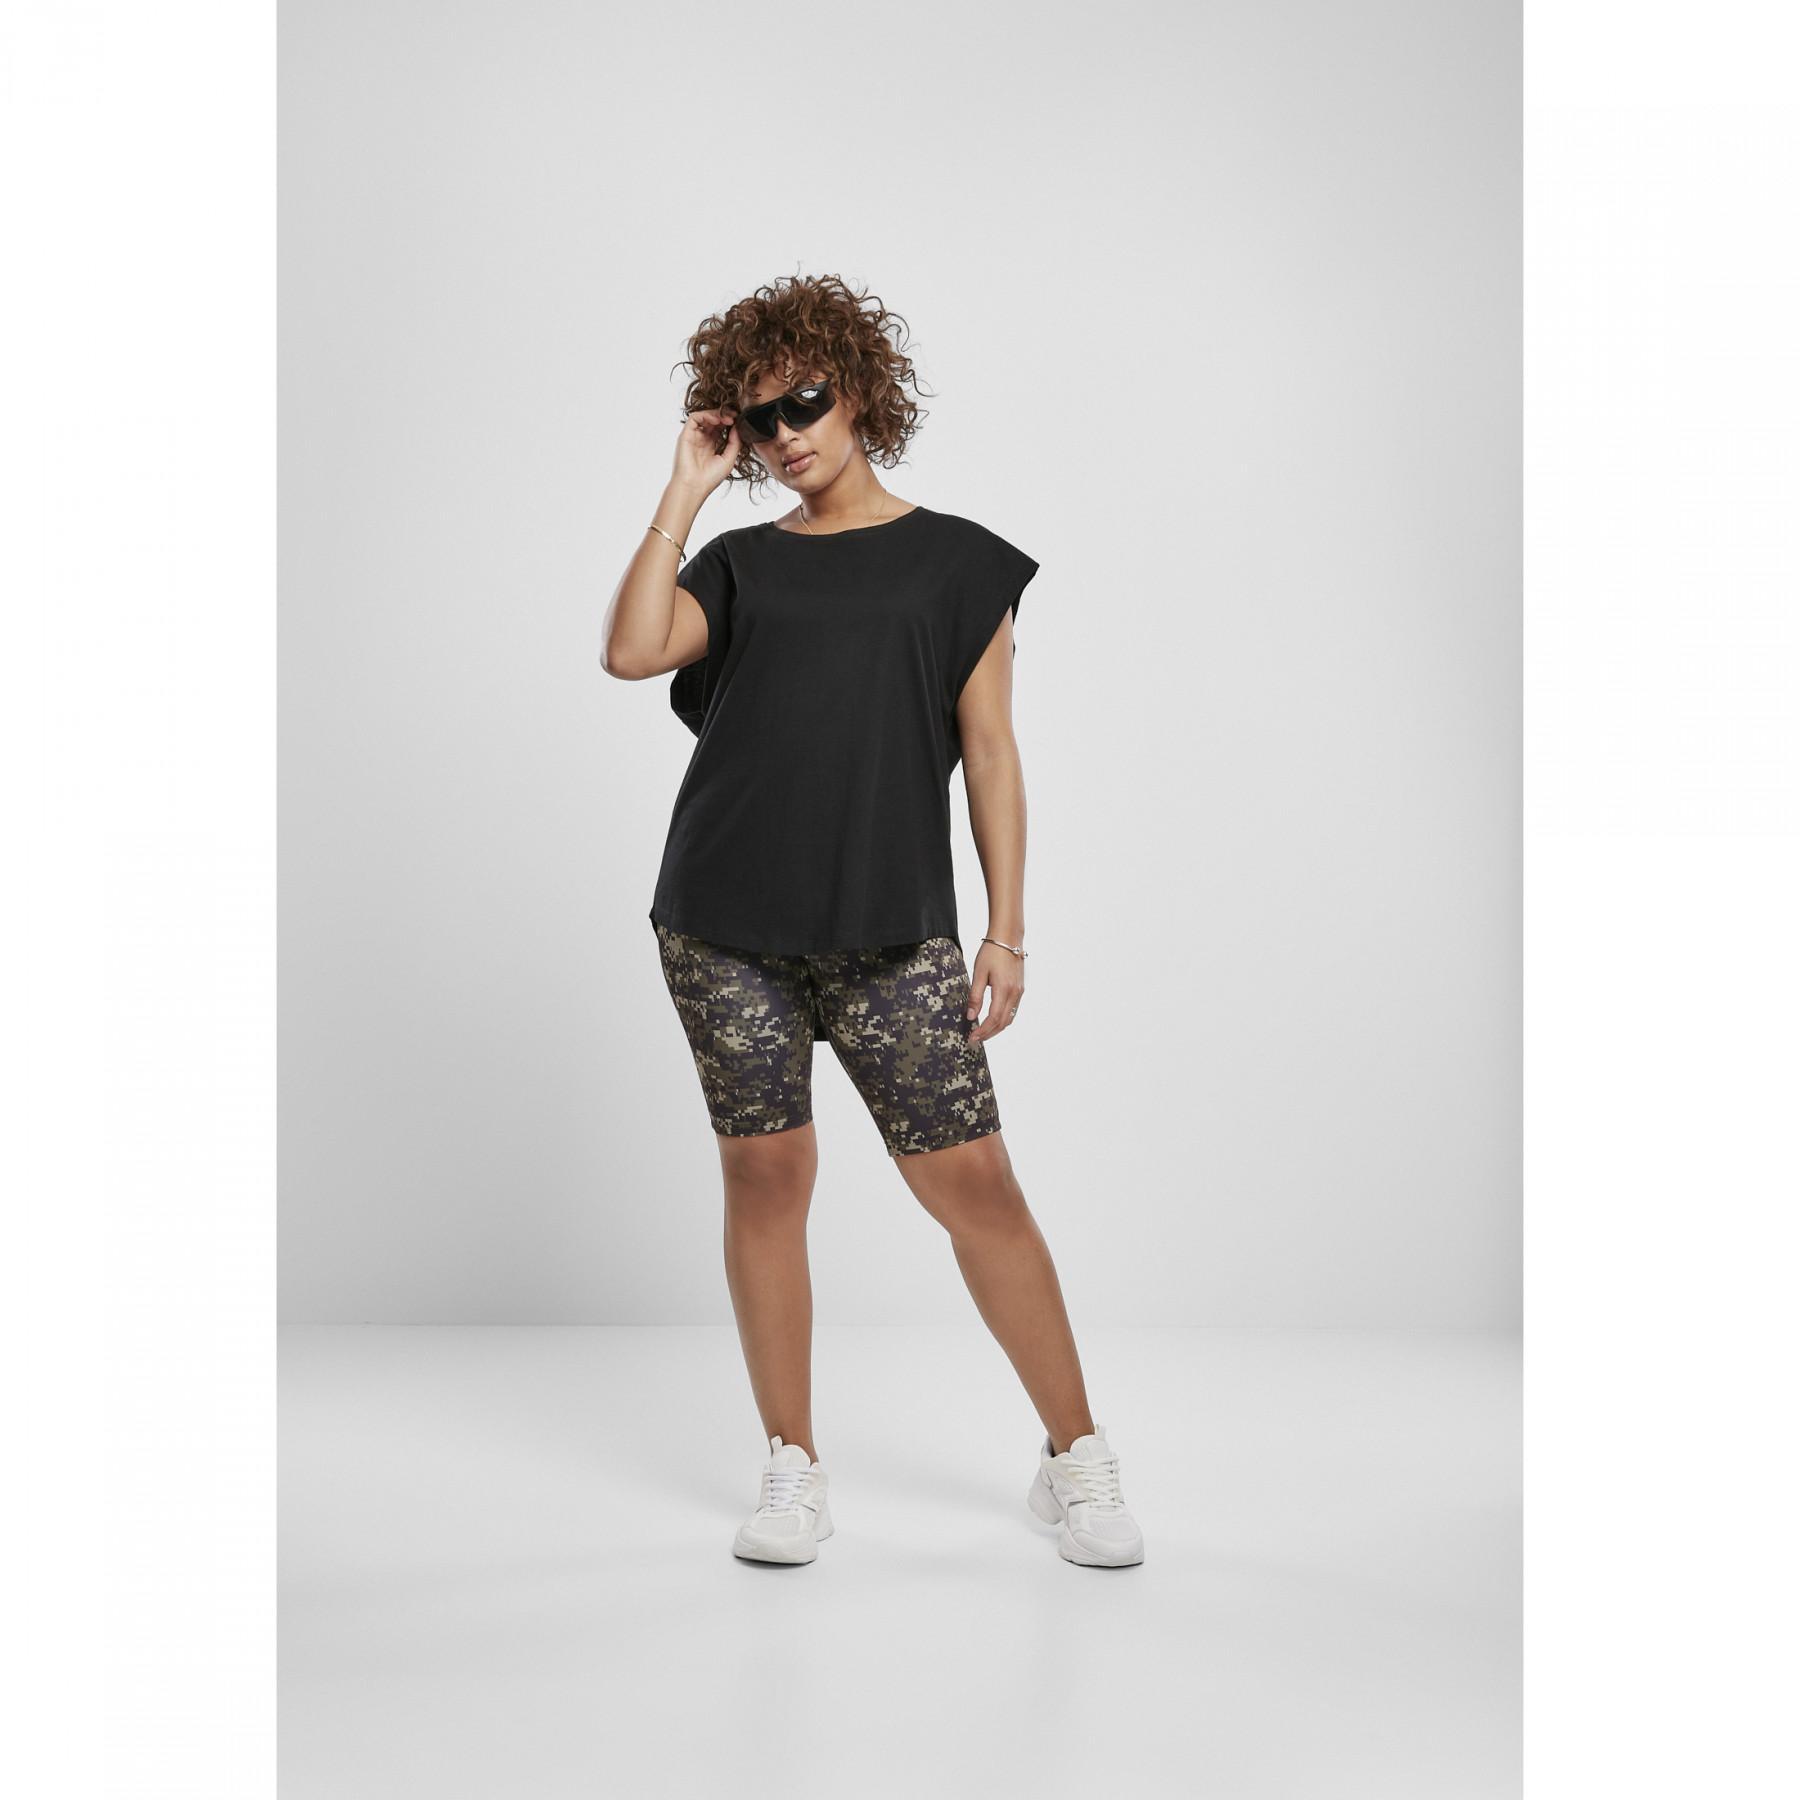 Radlerhosen für Frauen Urban Classics high waist camo tech (grandes tailles)